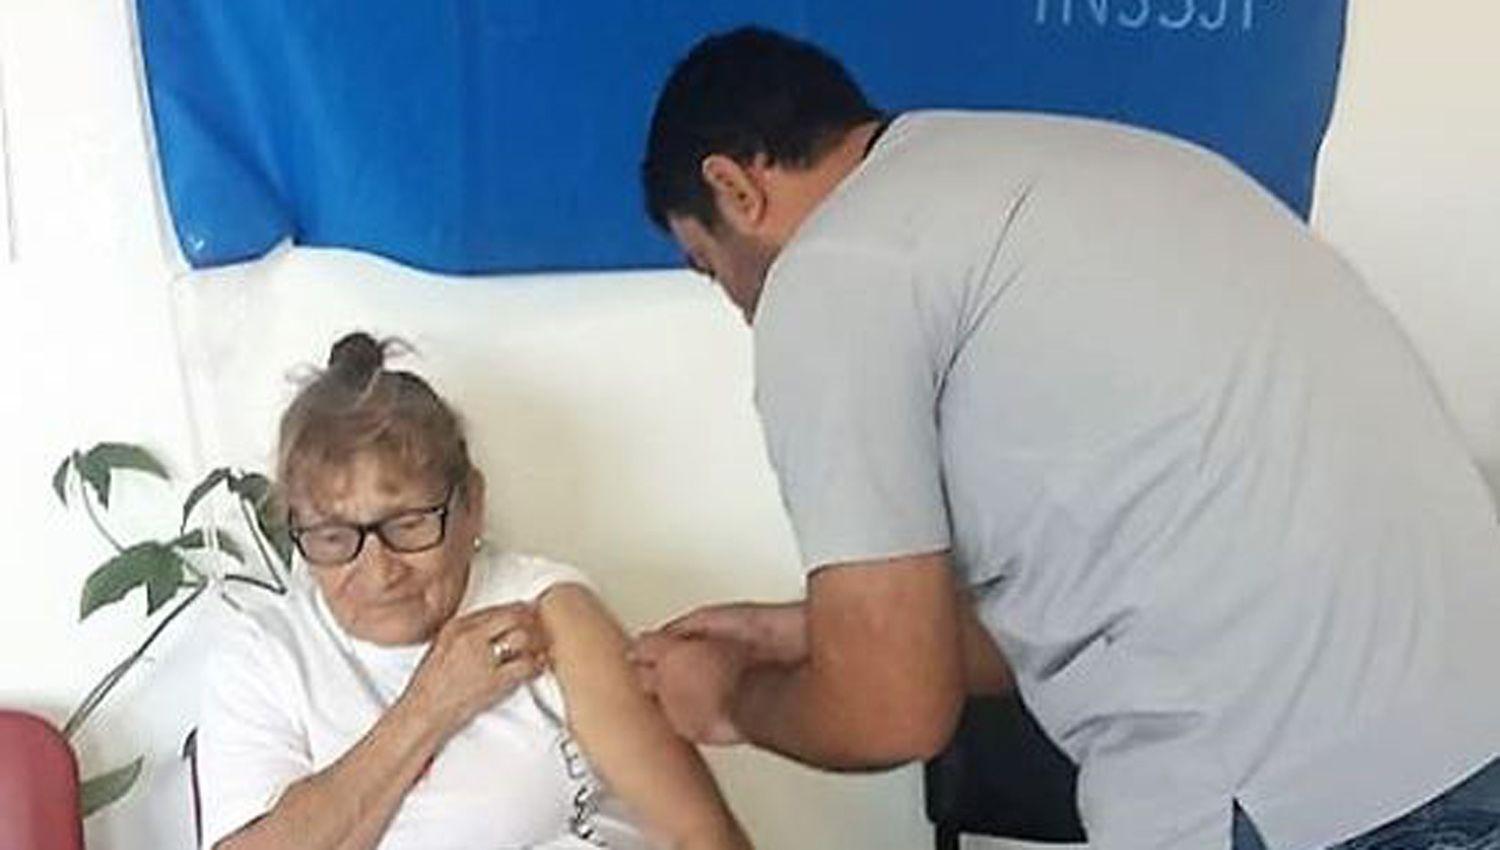 Operativo de vacunacioacuten antigripal en Colonia Dora